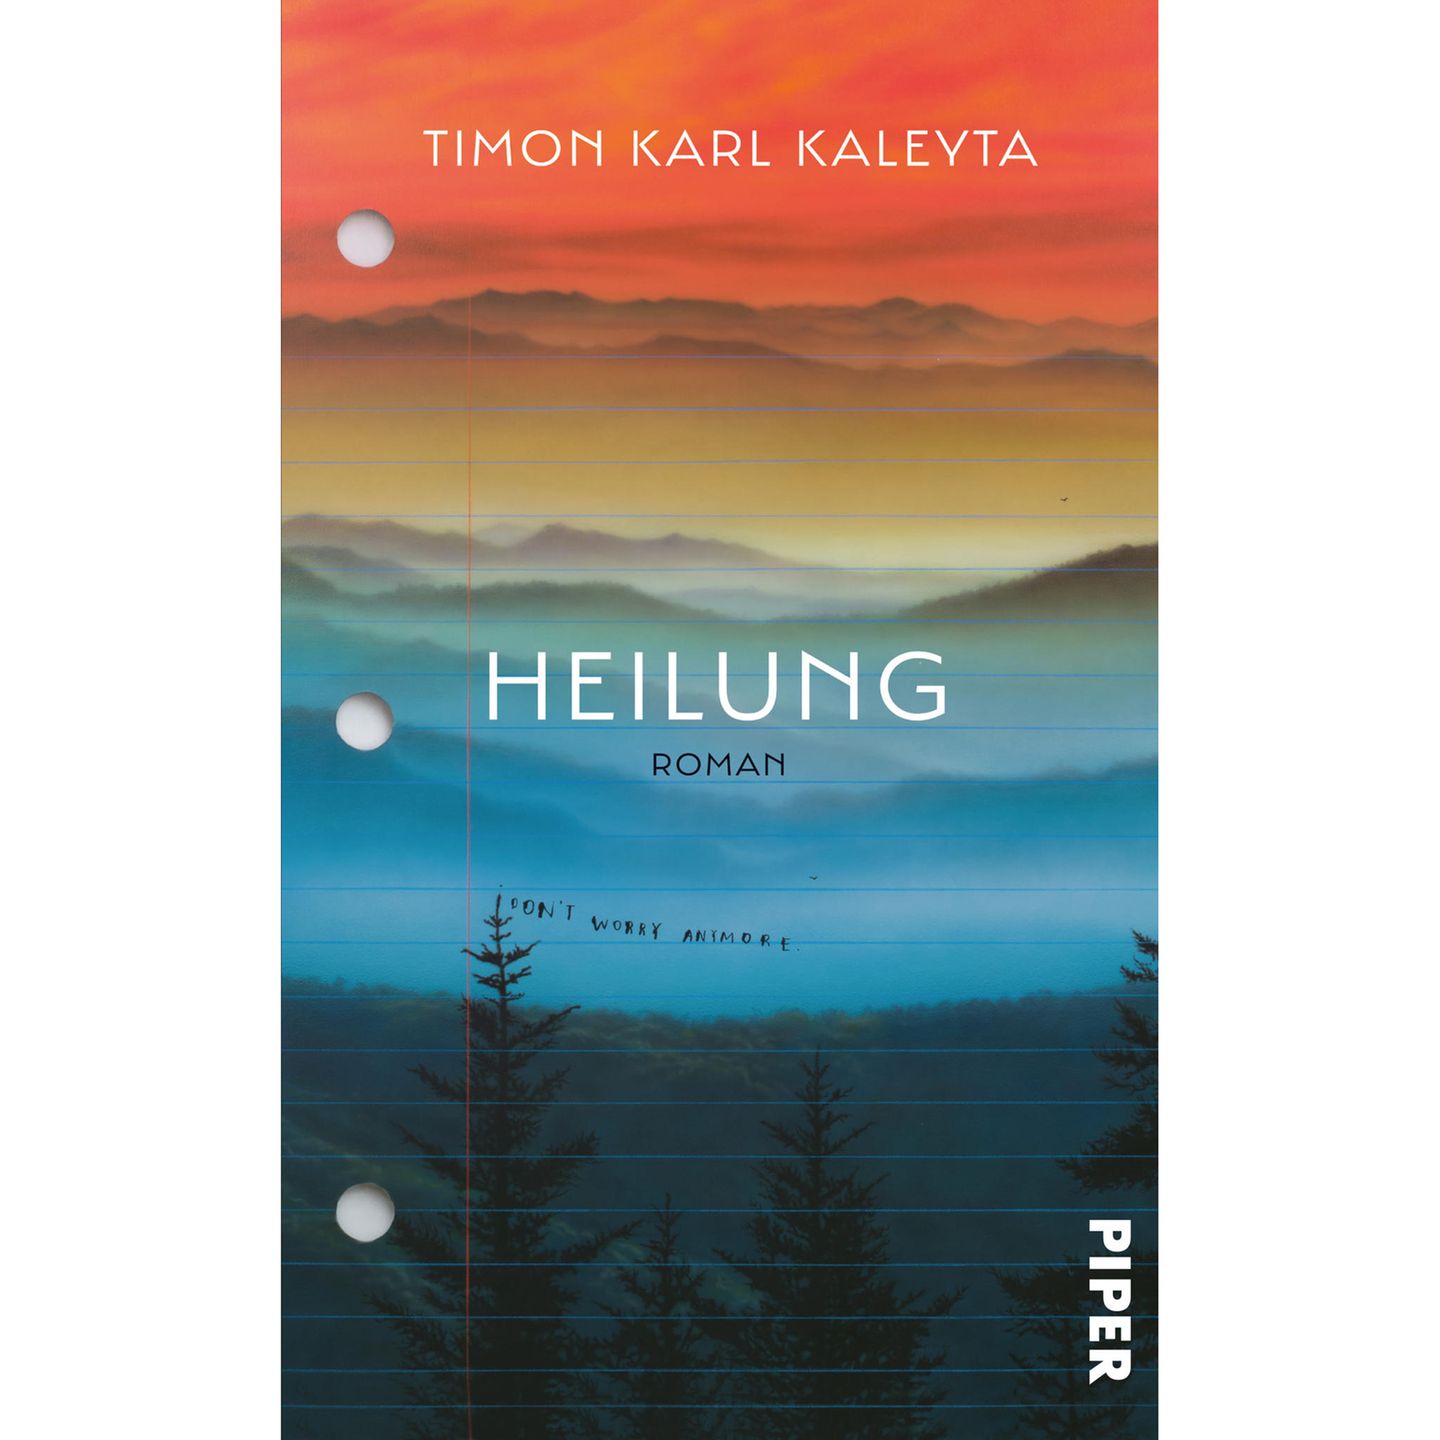 Tim Karl Kaleyta – Heilung